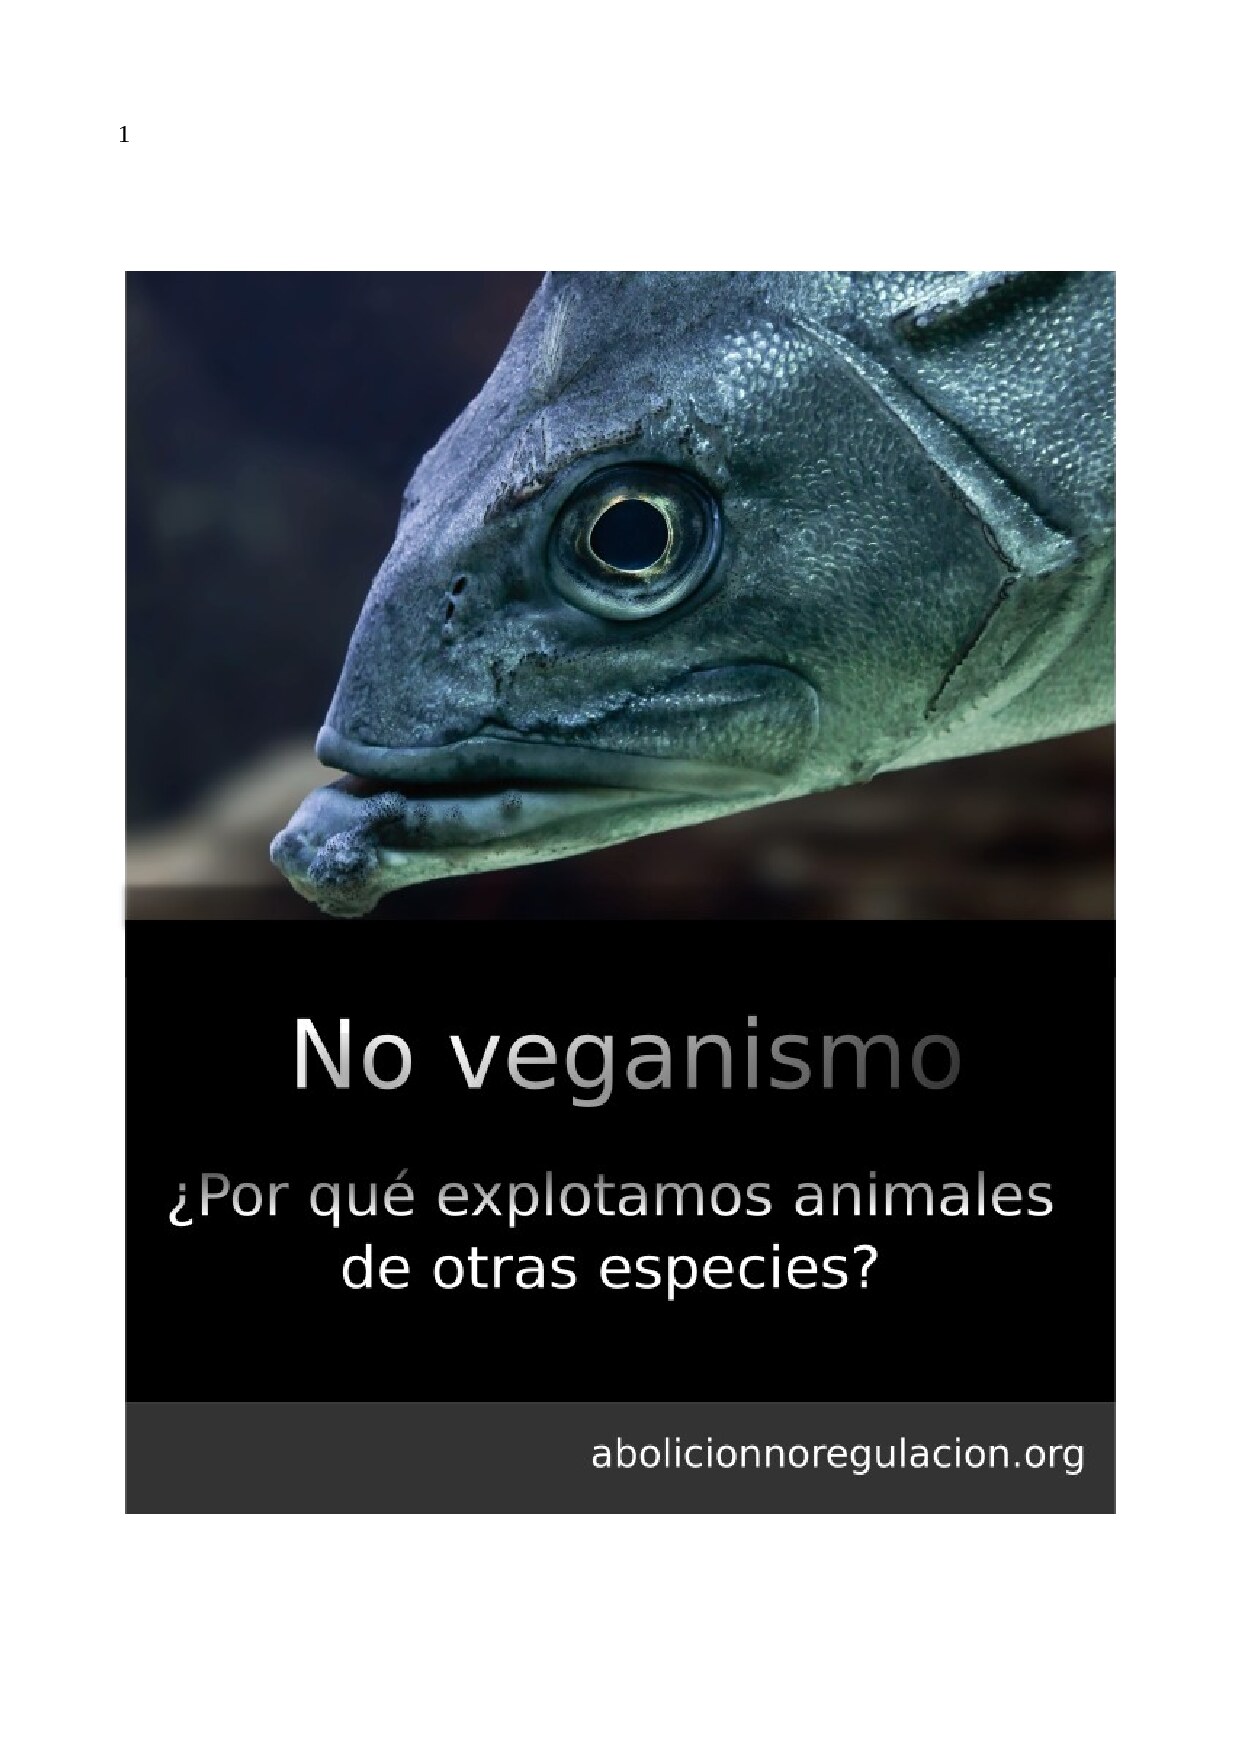 No veganismo ¿Por qué explotamos animales de otras especies?